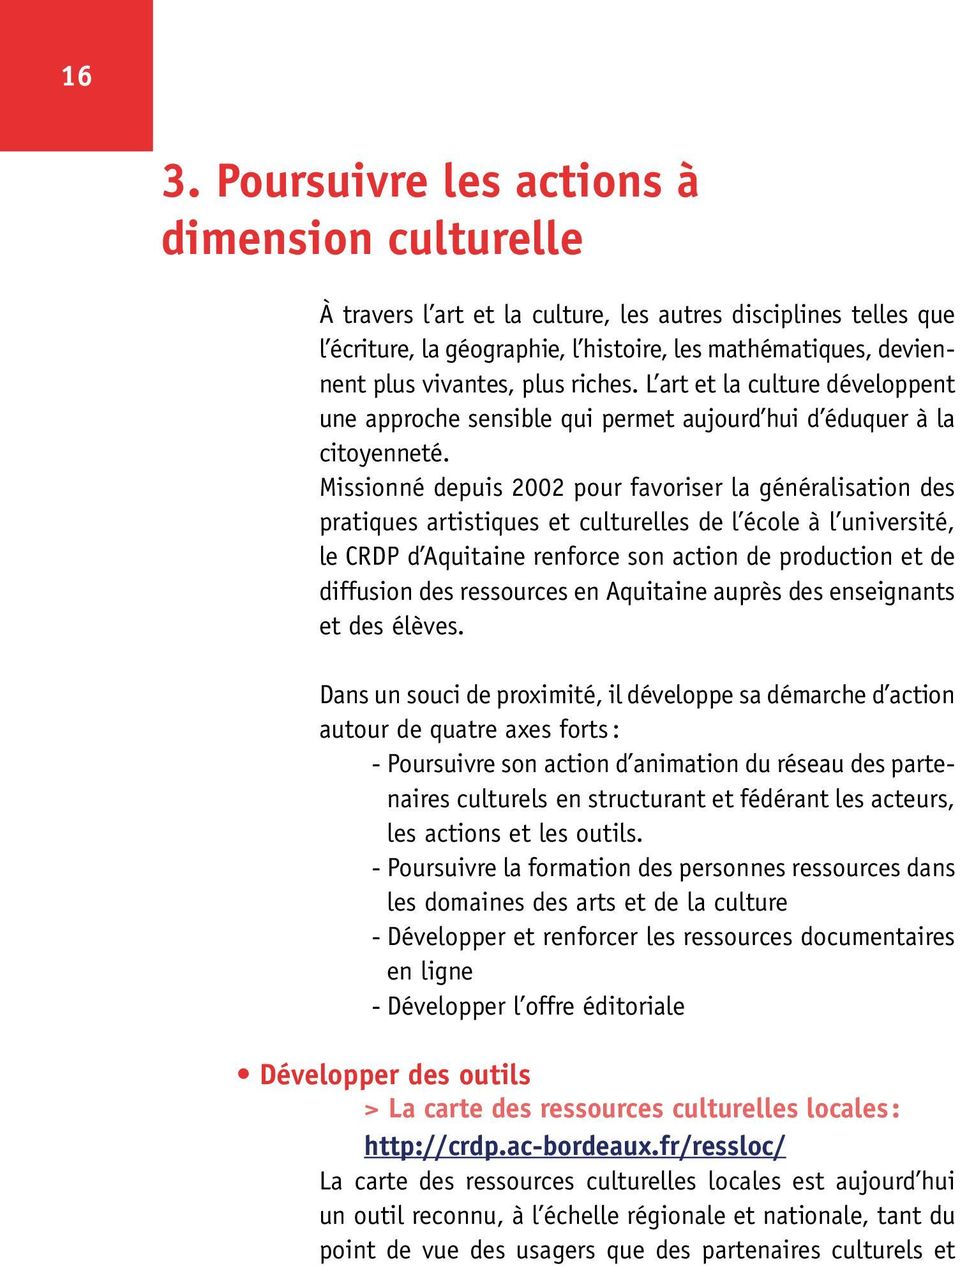 Missionné depuis 2002 pour favoriser la généralisation des pratiques artistiques et culturelles de l école à l université, le CRDP d Aquitaine renforce son action de production et de diffusion des